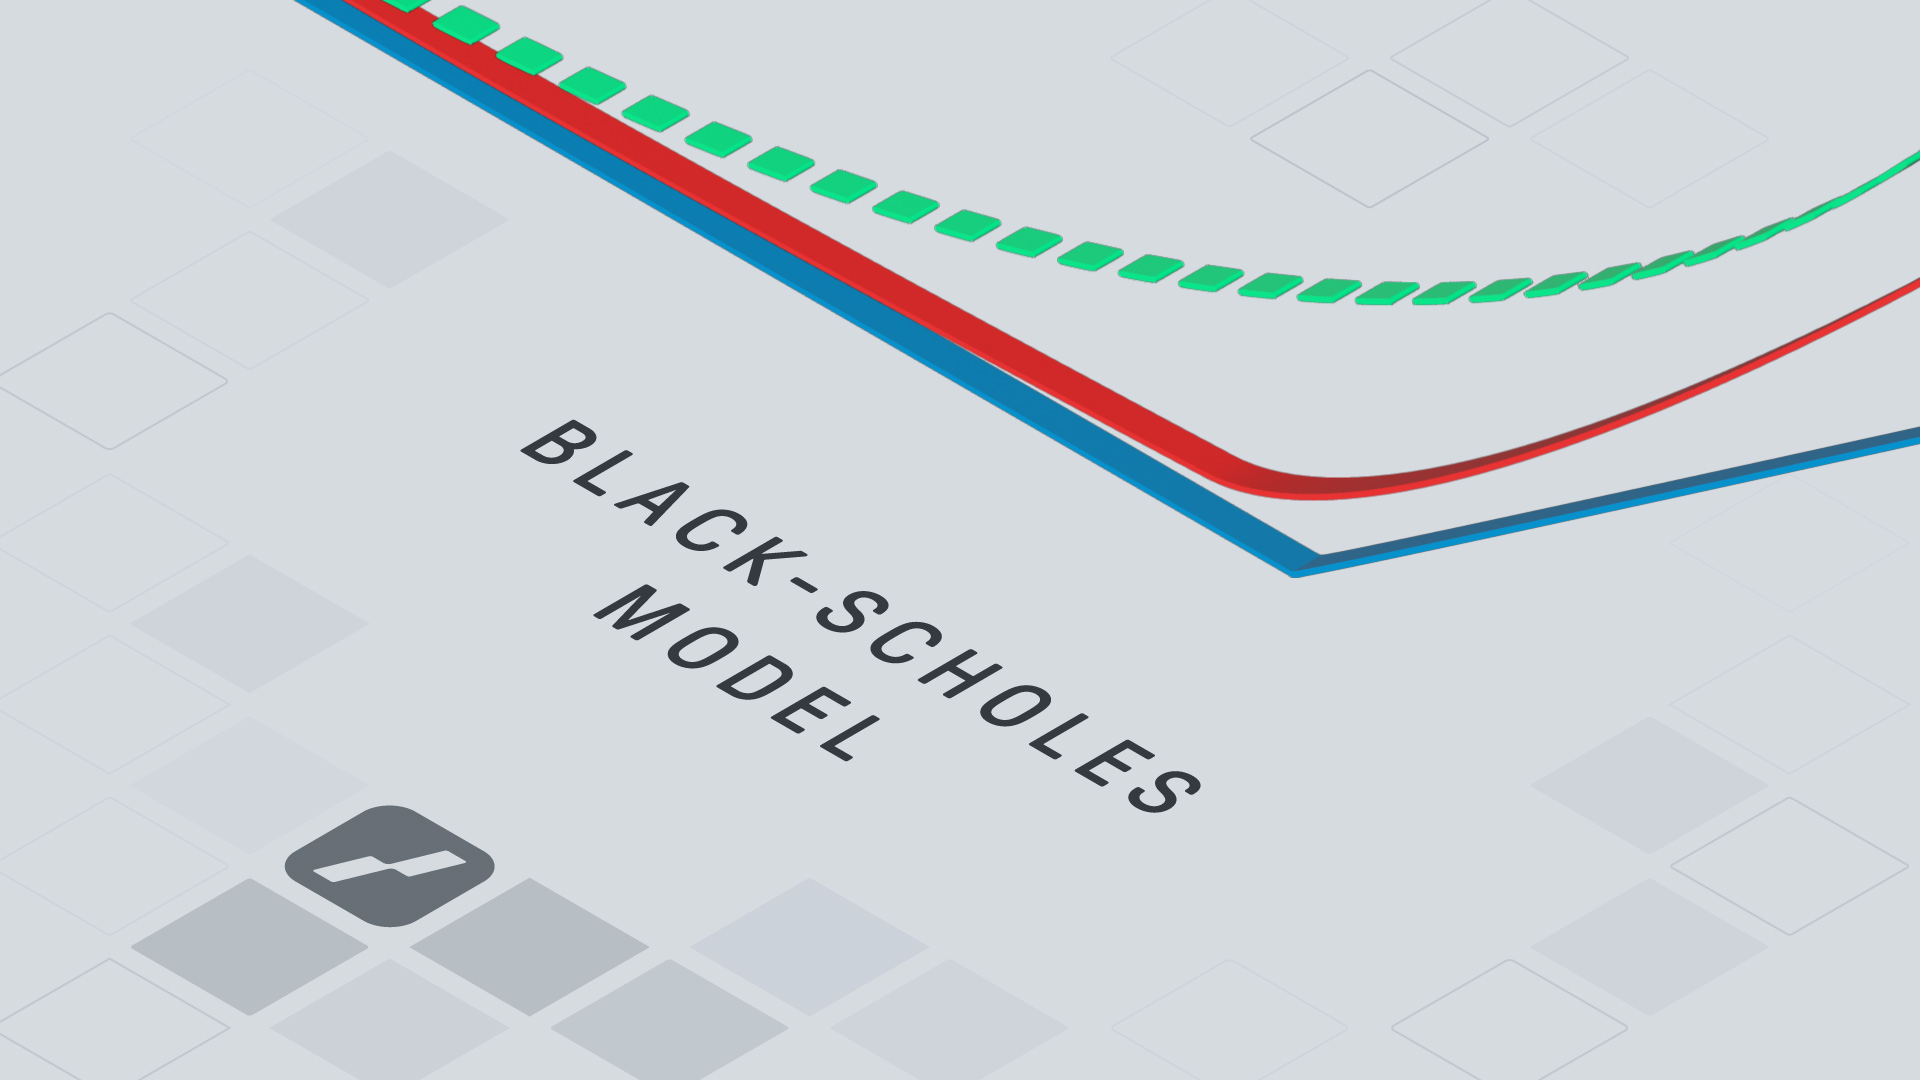 Black-Scholes model: vzorec pro oceňování opcí